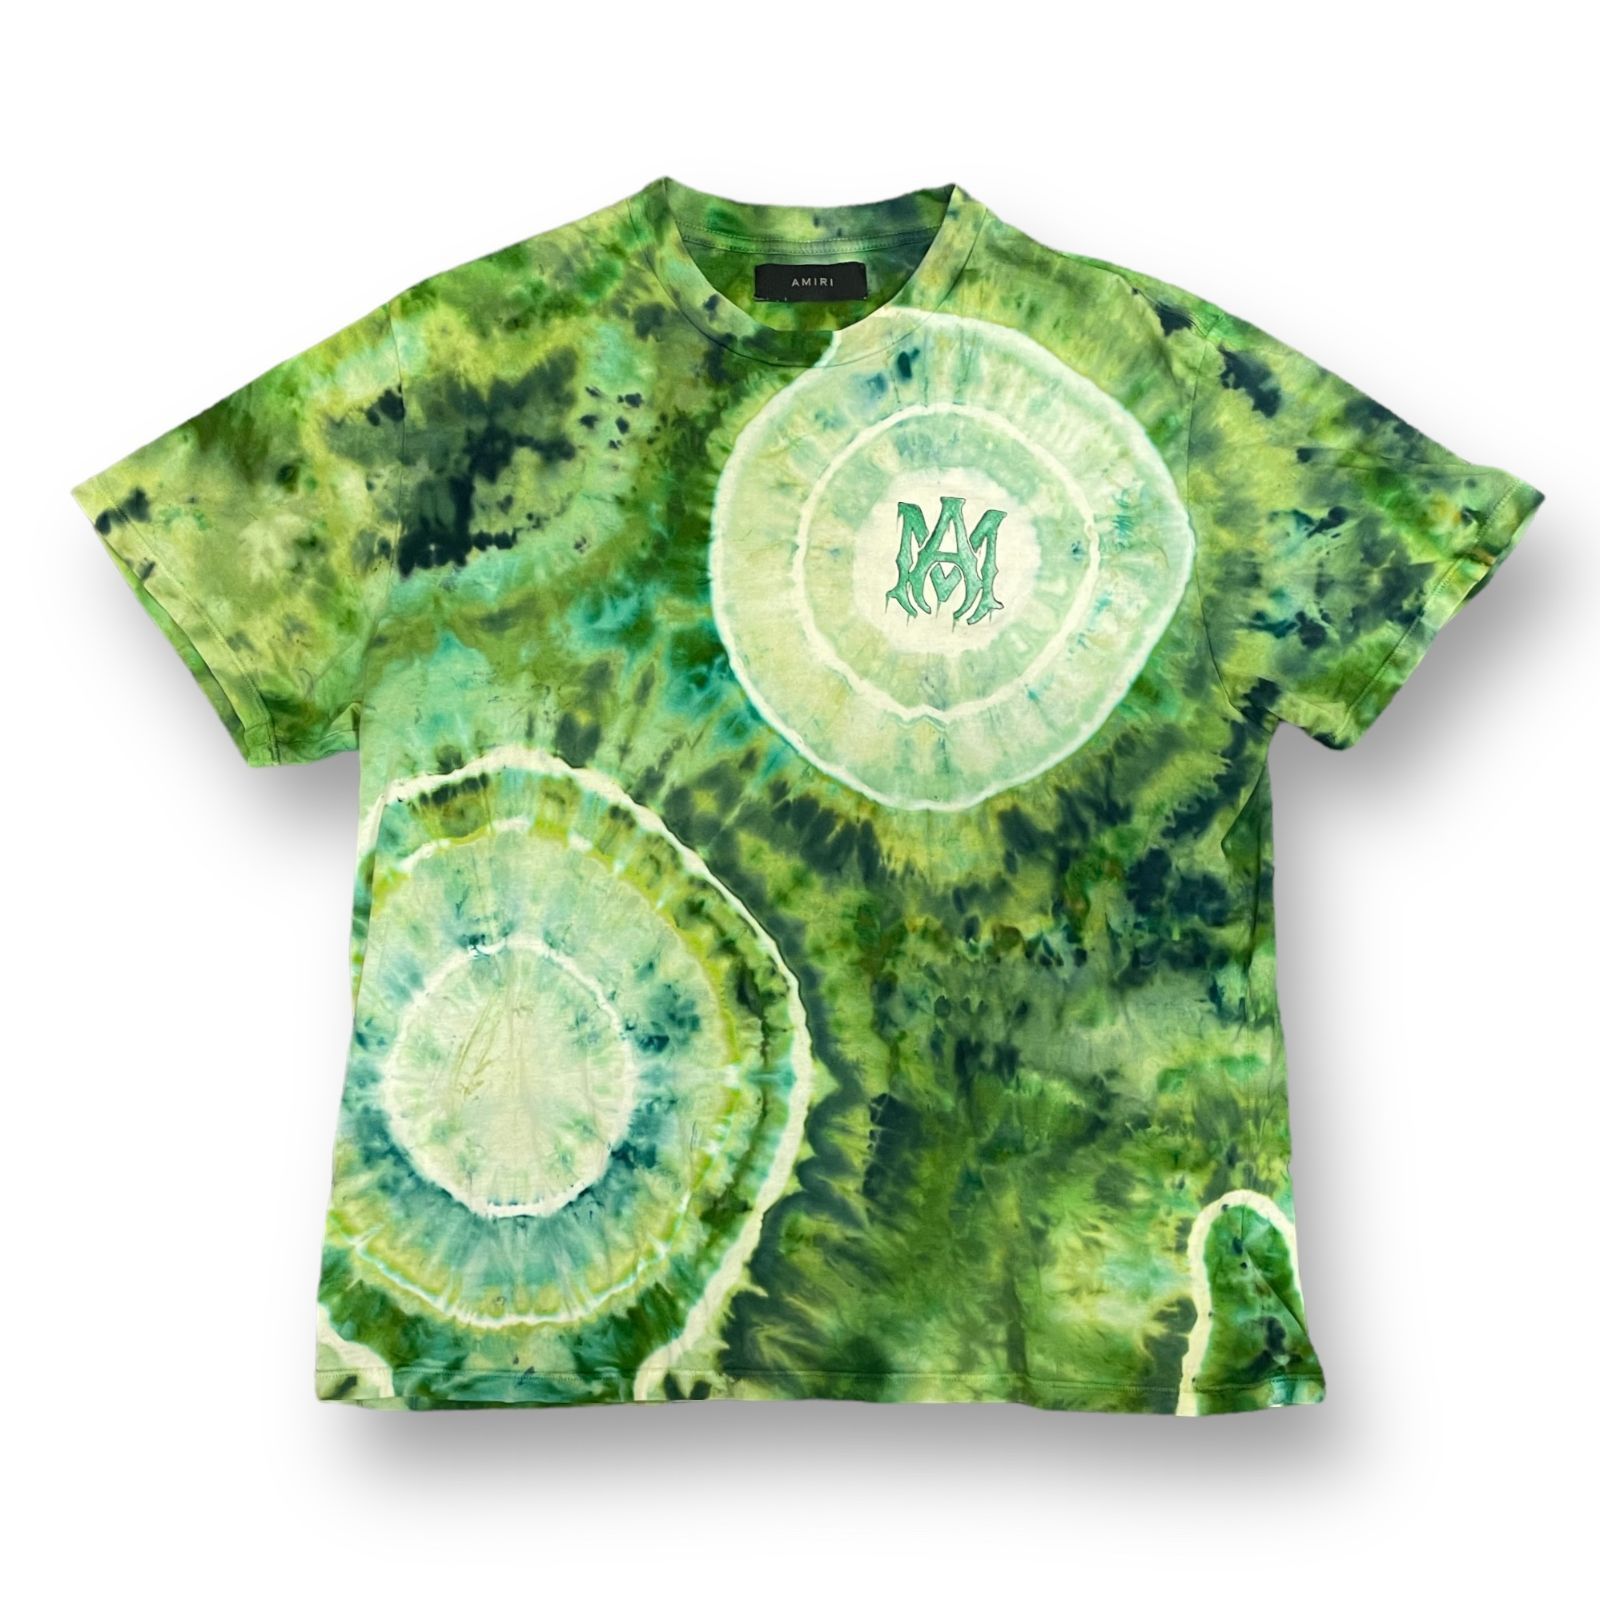 アミリ ロゴプリントTシャツ XL